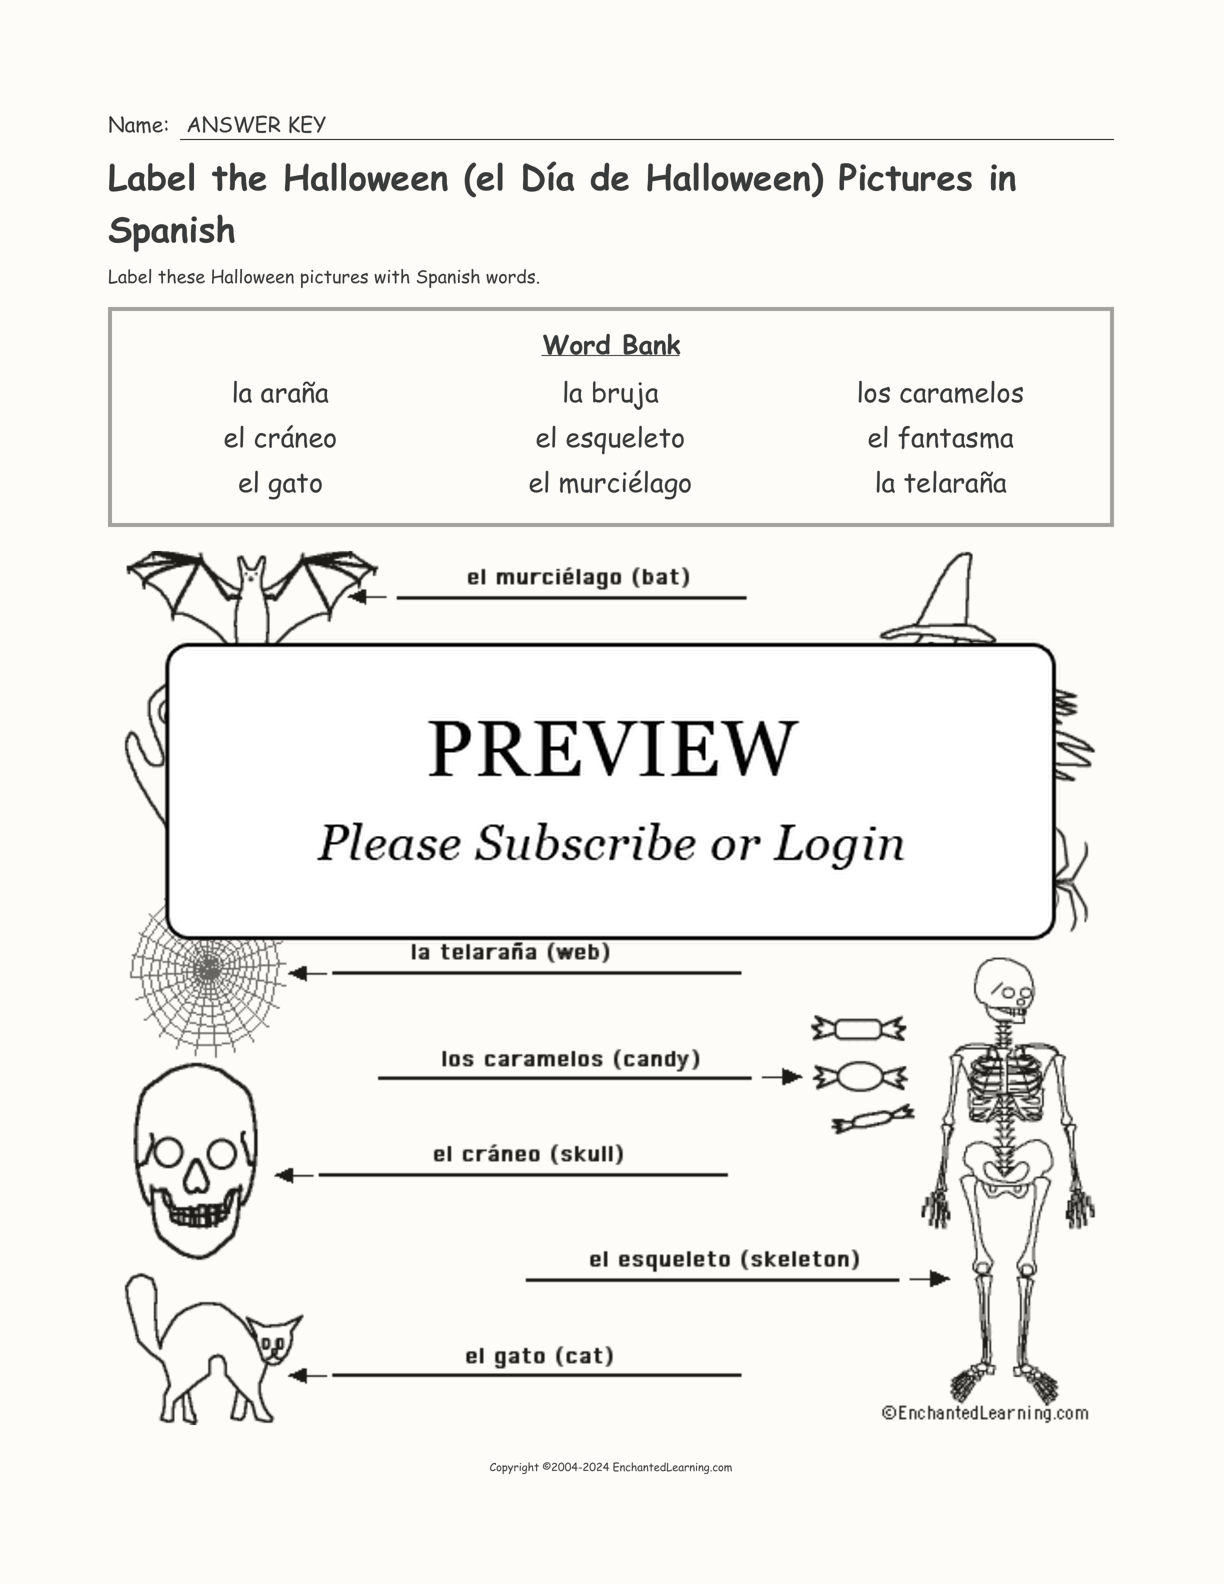 Label the Halloween (el Día de Halloween) Pictures in Spanish interactive worksheet page 2